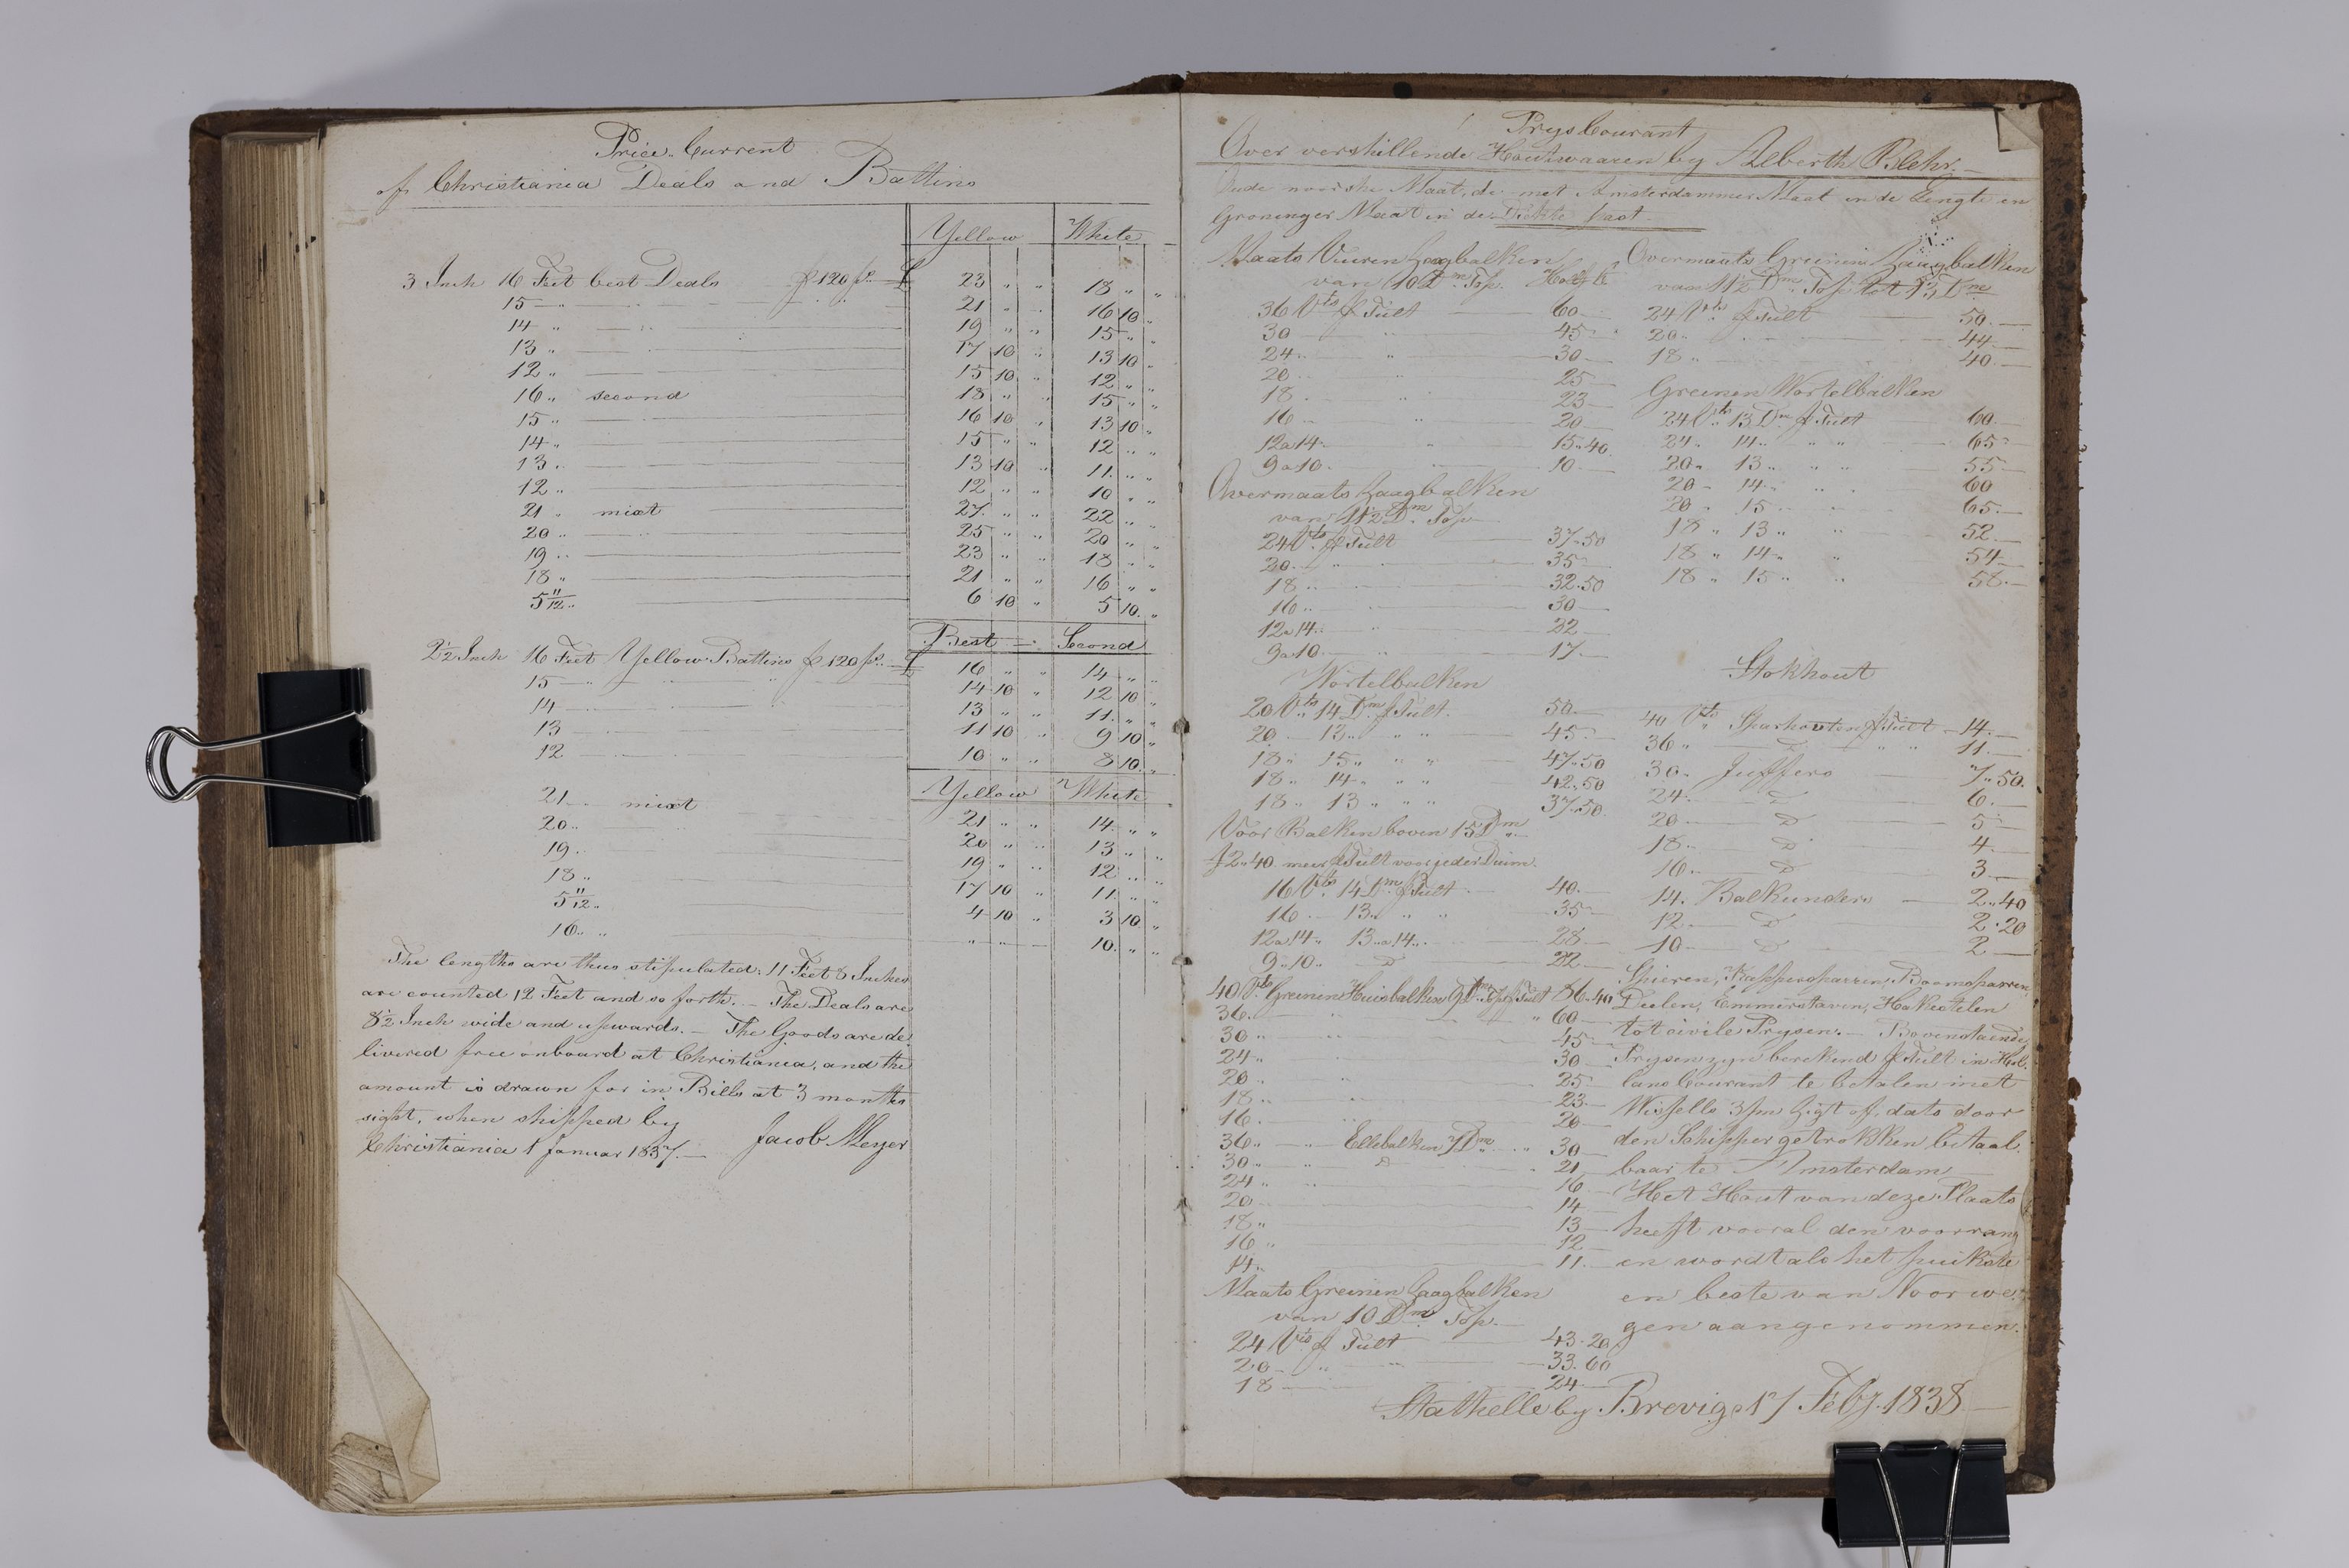 , Priscourant-tømmerpriser, 1834-38, 1834-1838, s. 384